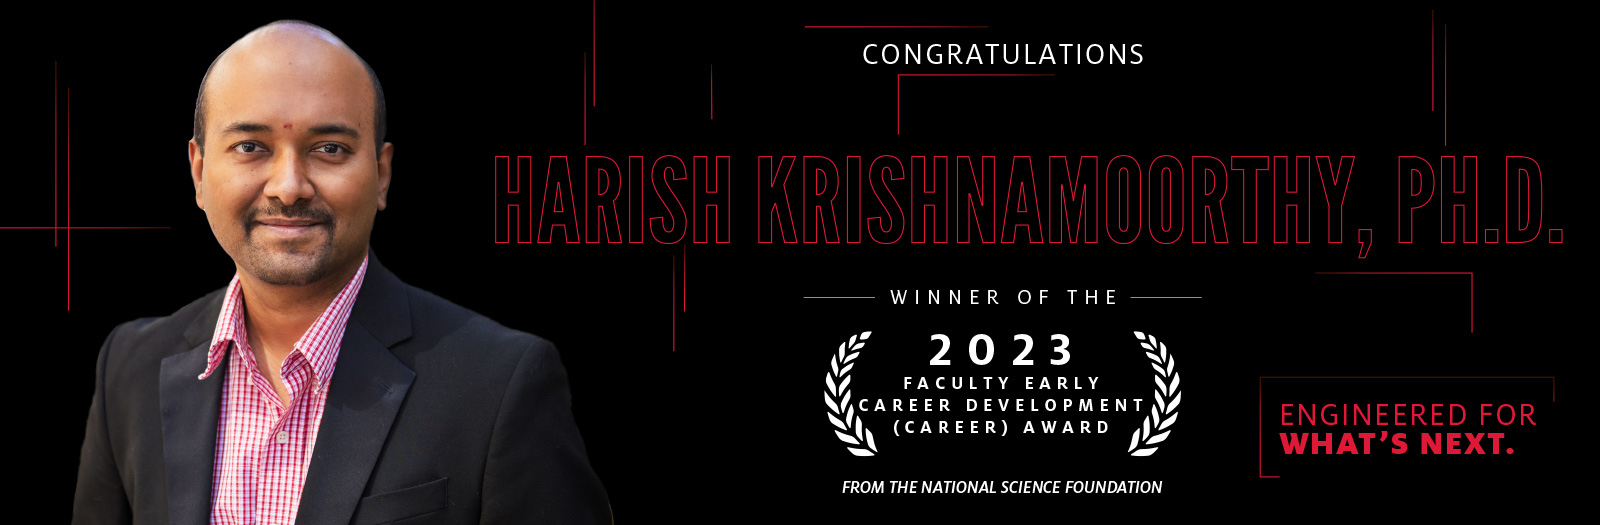 Congratulations Harish Krishnamoorthy